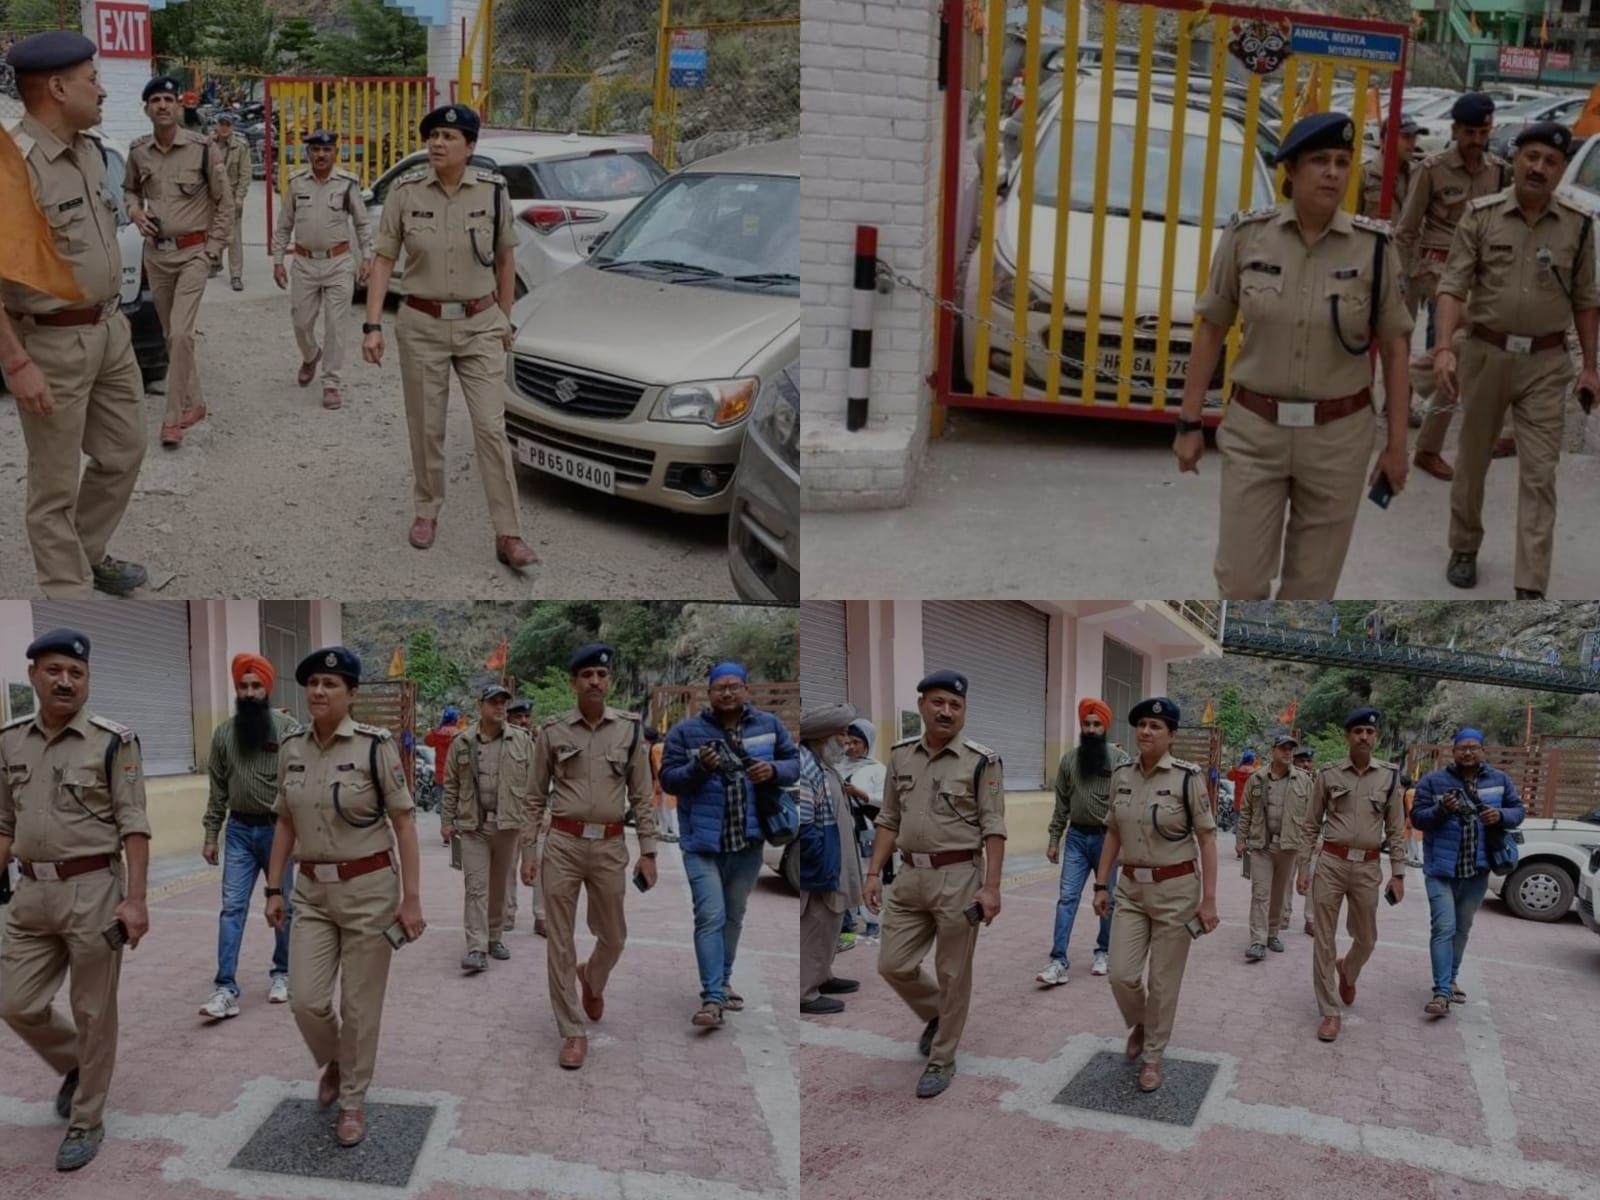 हेमकुण्ड साहिब यात्रा के परिपेक्ष्य में पुलिस अधीक्षक द्वारा किया गया गोविन्दघाट क्षेत्र का निरीक्षण, दिये गए आवश्यक दिशा निर्देश